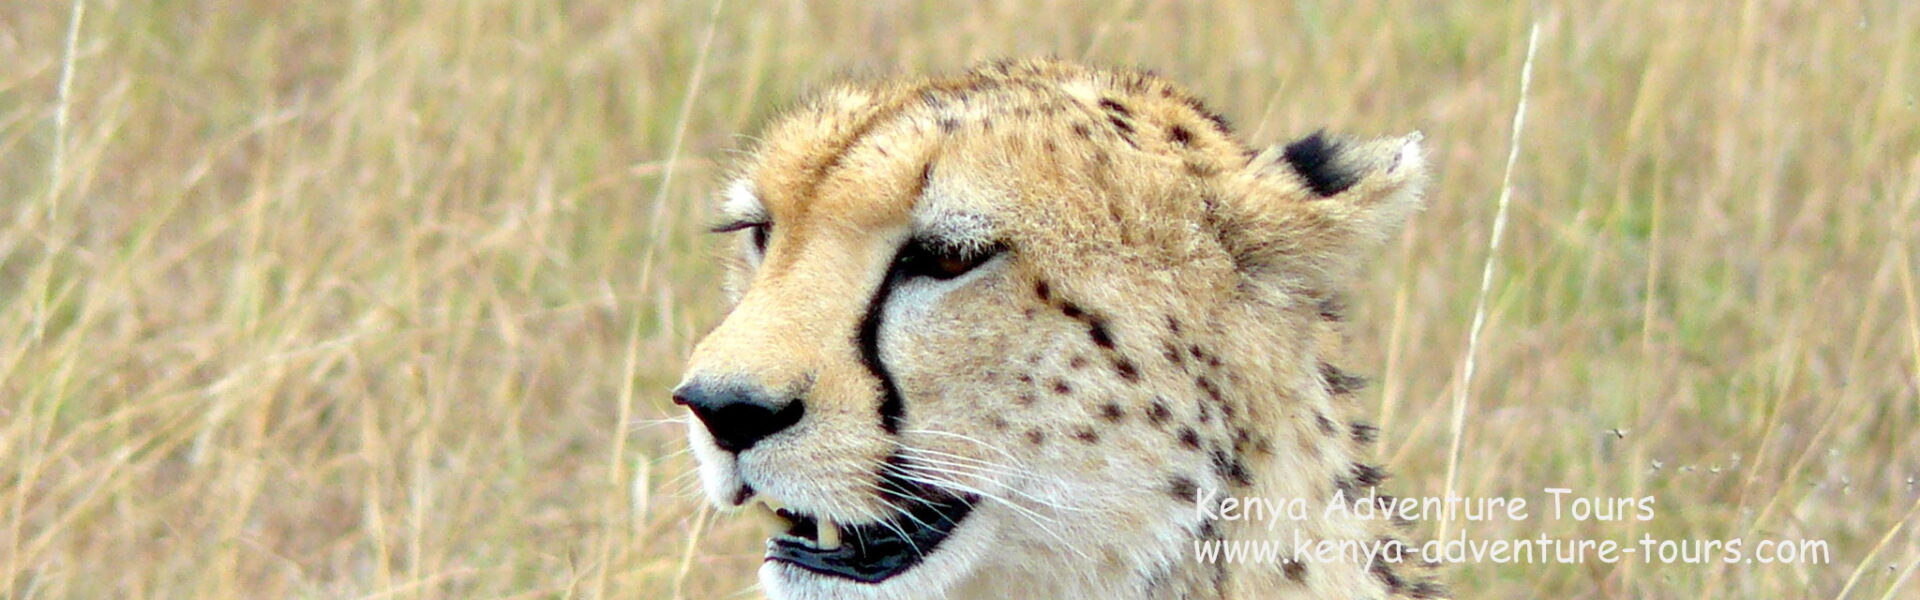 Cheetah spotted on a Kenya Safari